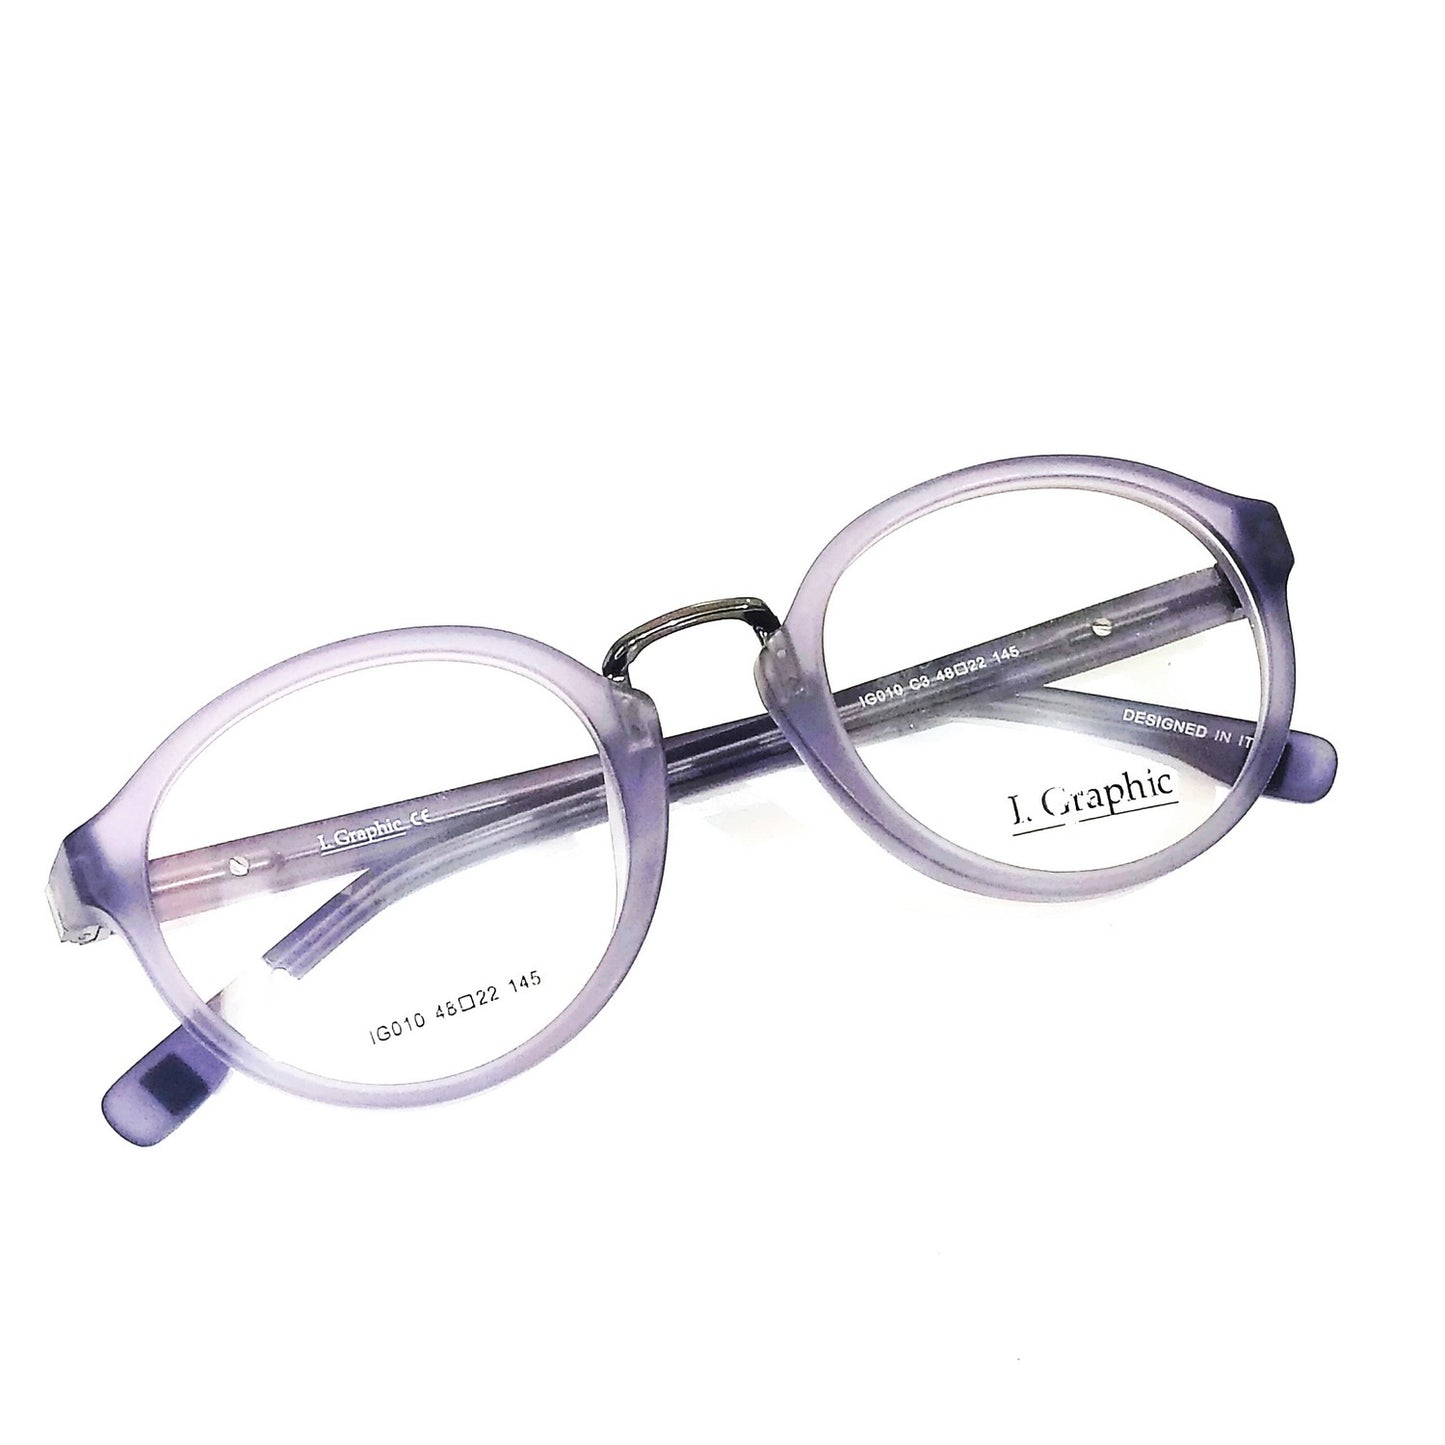 Premium Acetate Frame Full Frame Glasses Spectacle Frames for Men and Women IG010